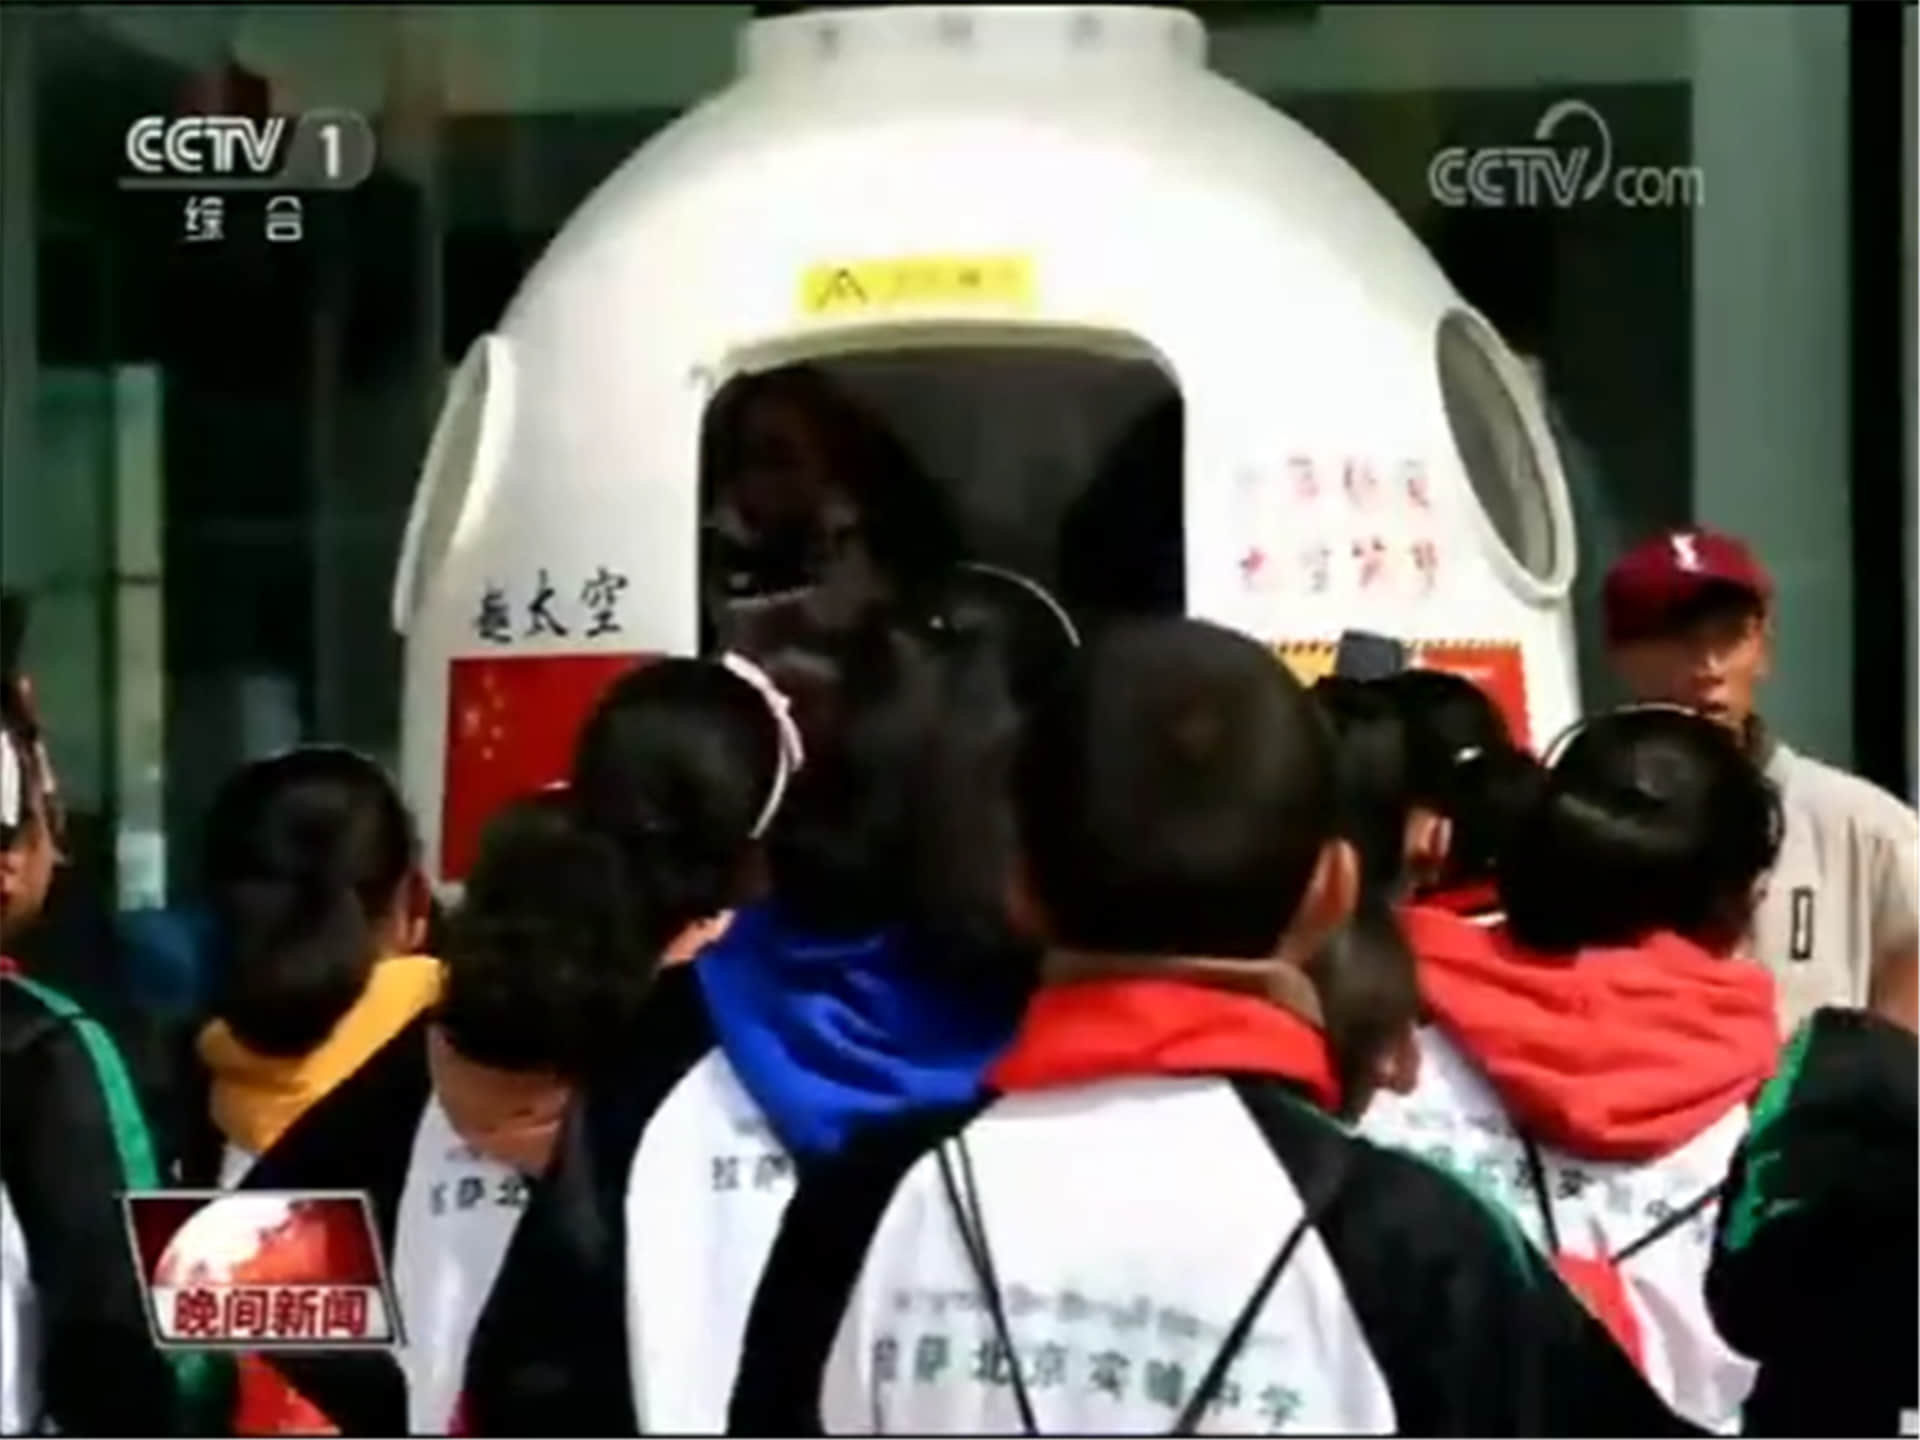 2019年中国航天日活动——西藏站，银河幻影VR航天科普体验亮相日光城拉萨，为新中国成立70周年、西藏解放60周年送祝福，CCTV特别报道。